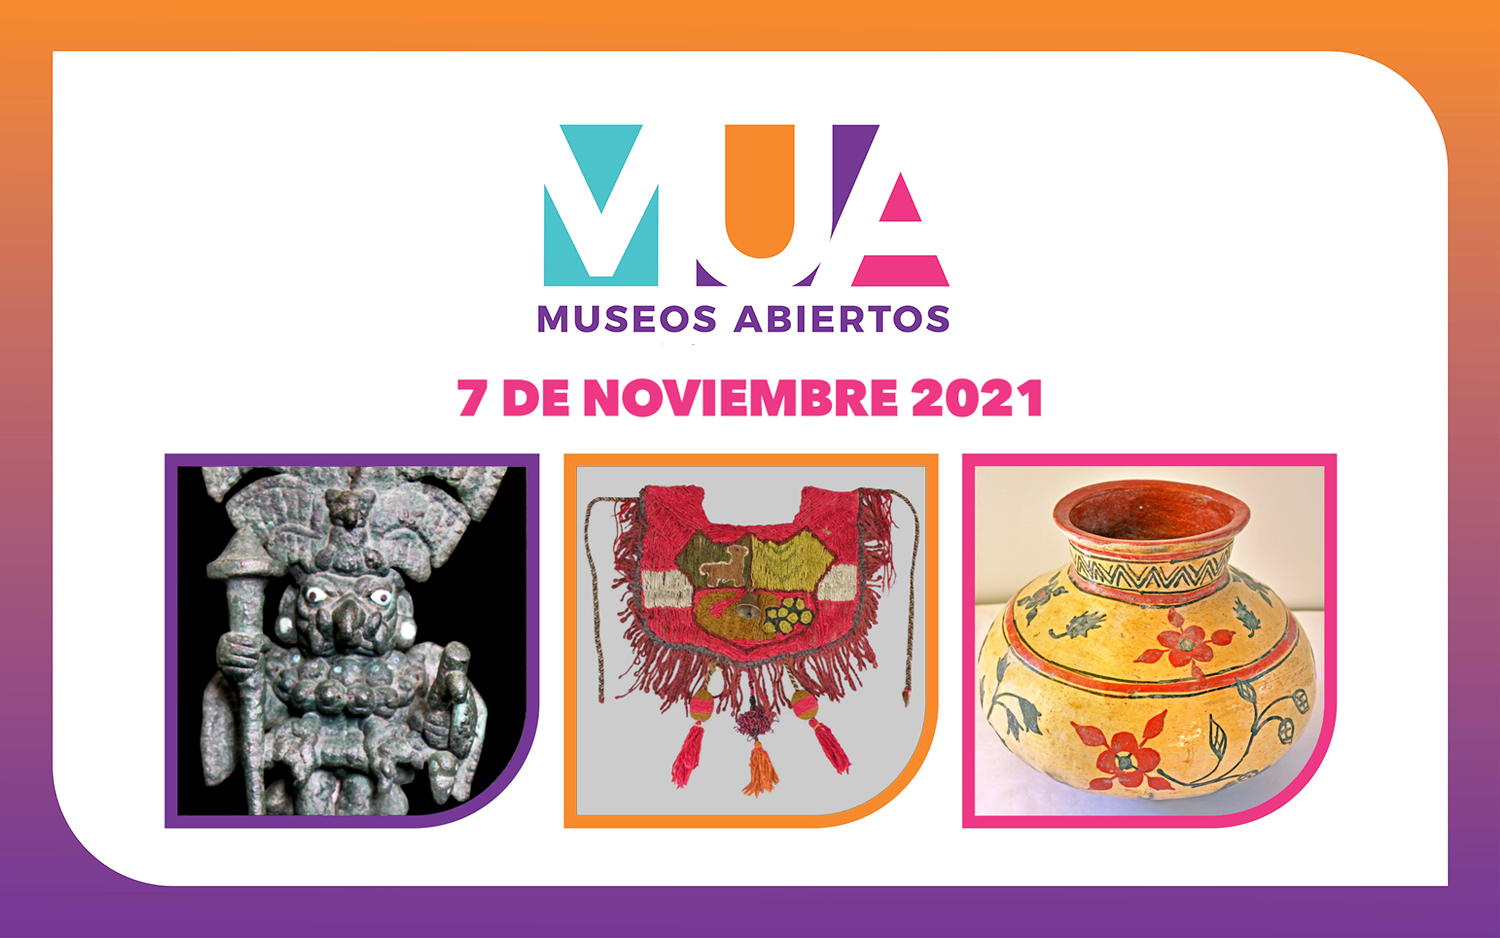 Actividades de "Museos Abiertos" - MUA en noviembre 2021